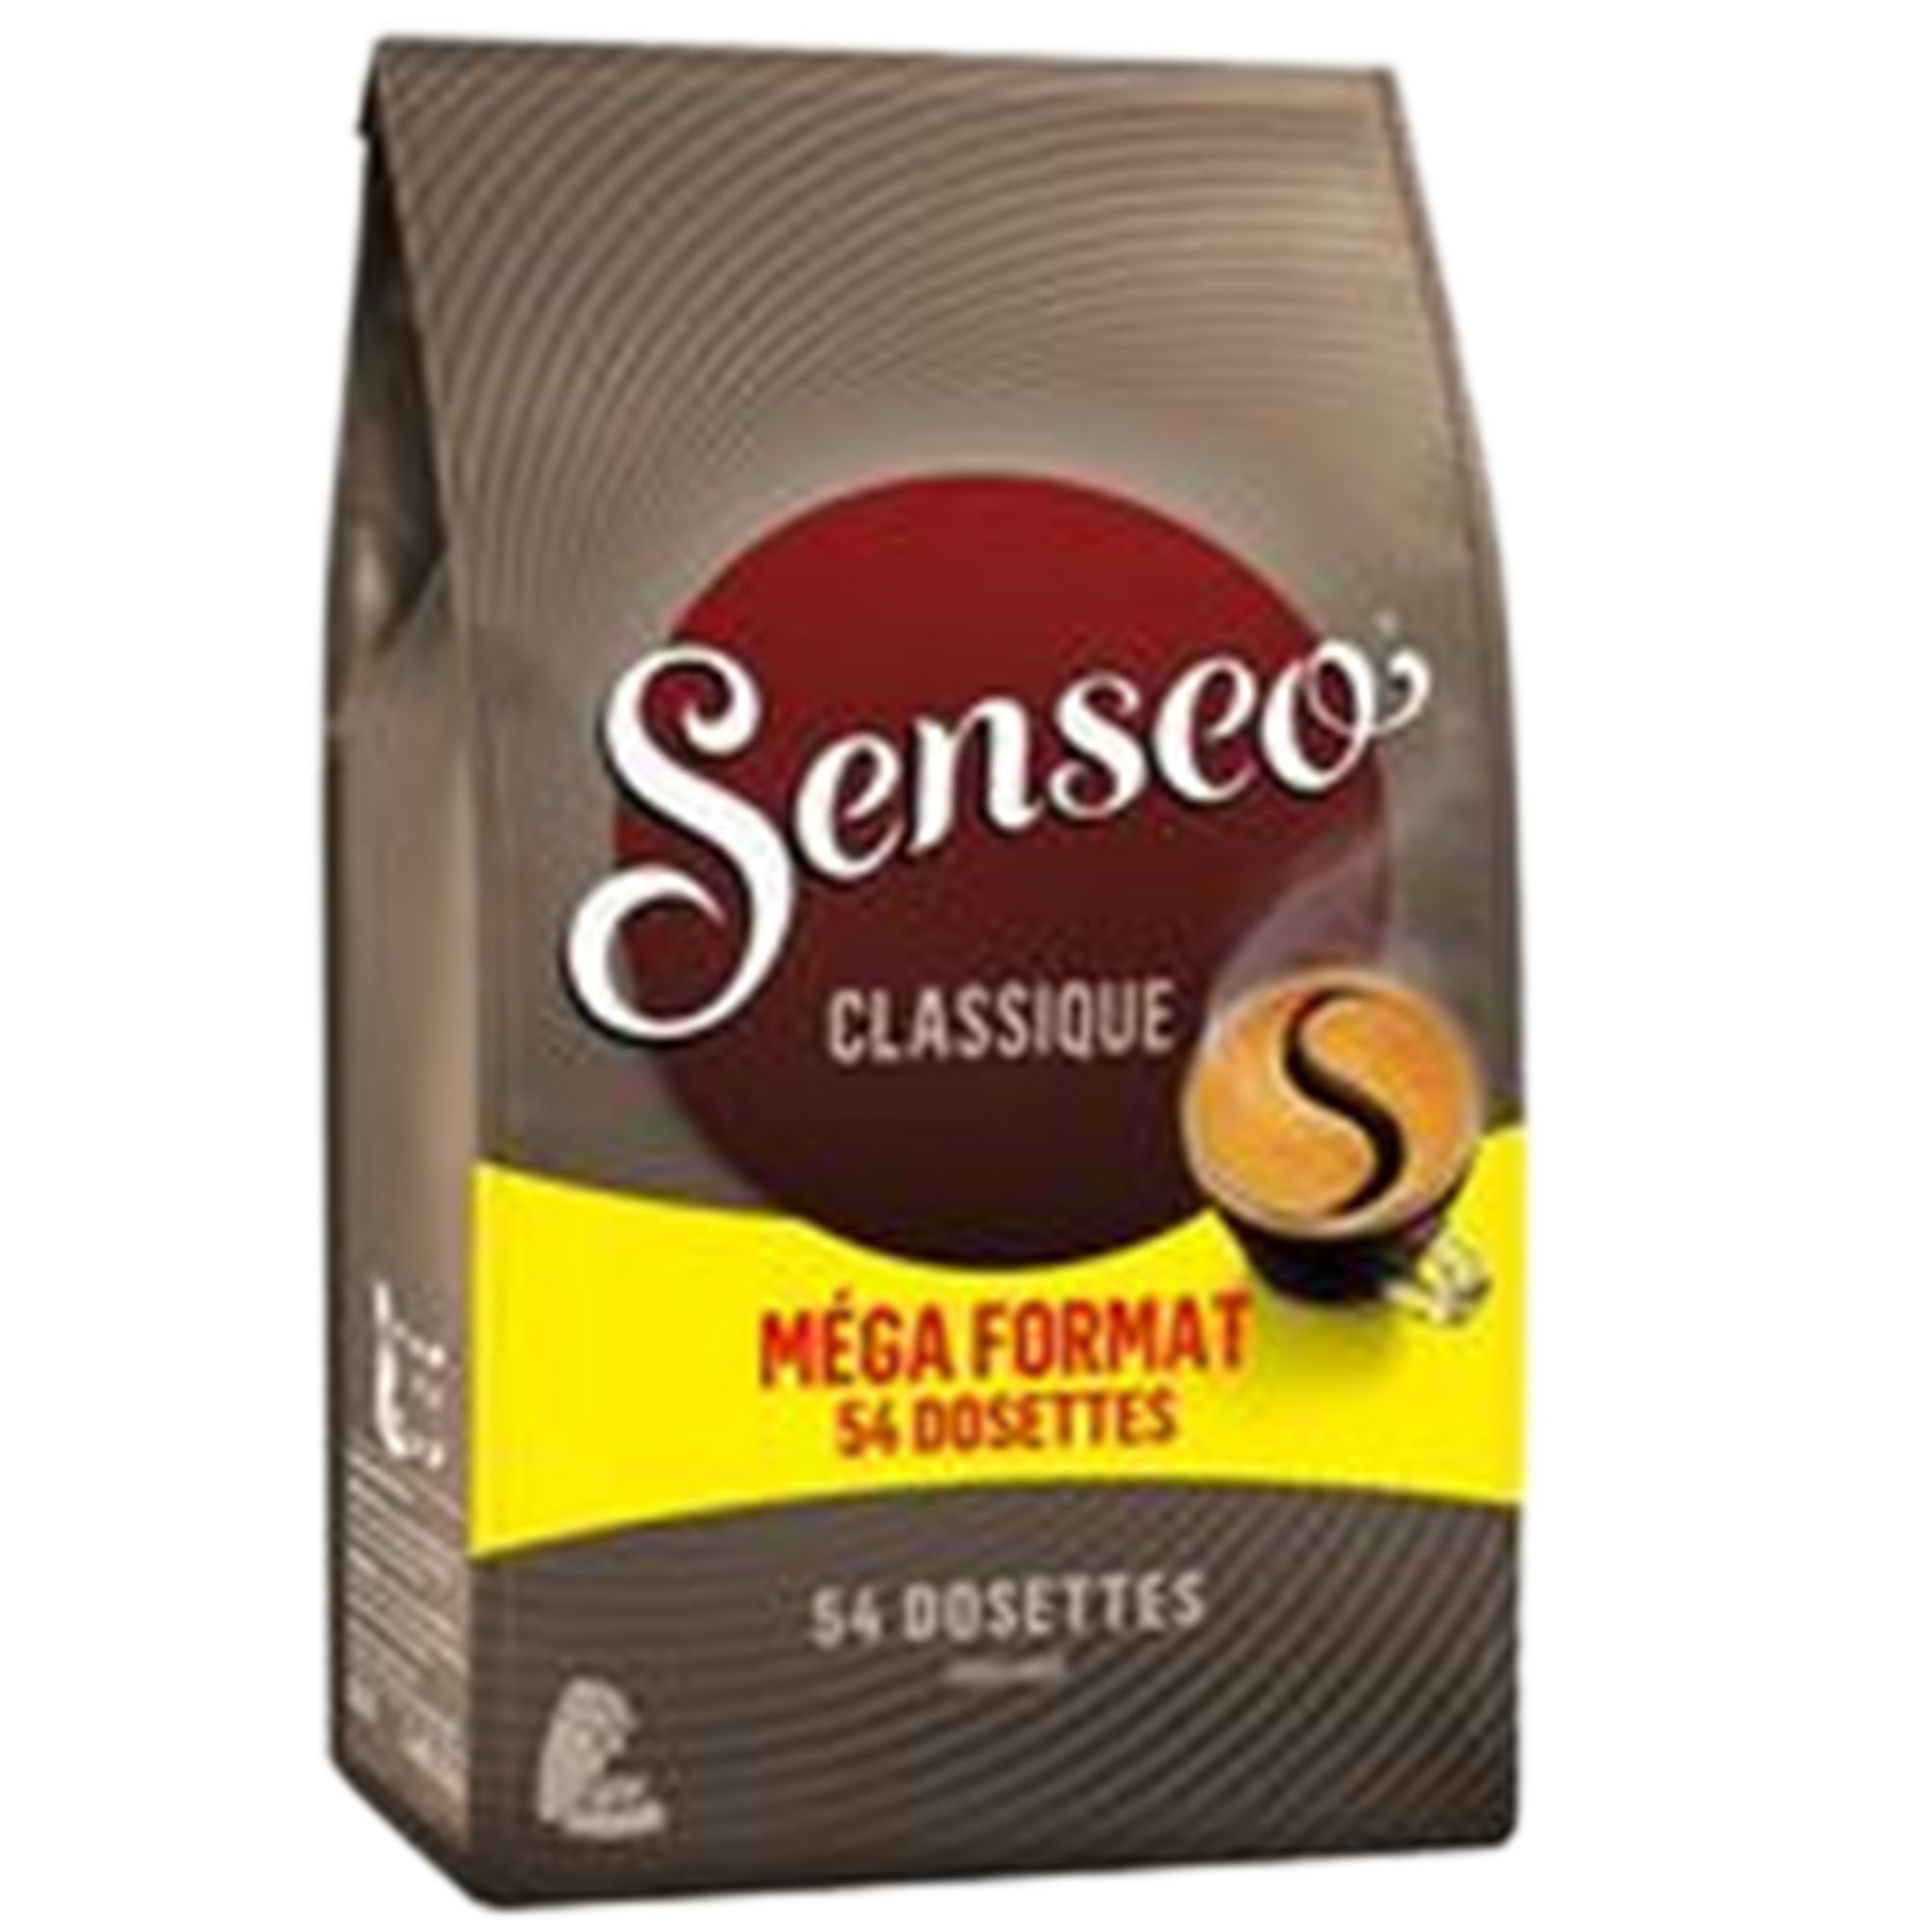 Dosettes de café Classique - Senseo®